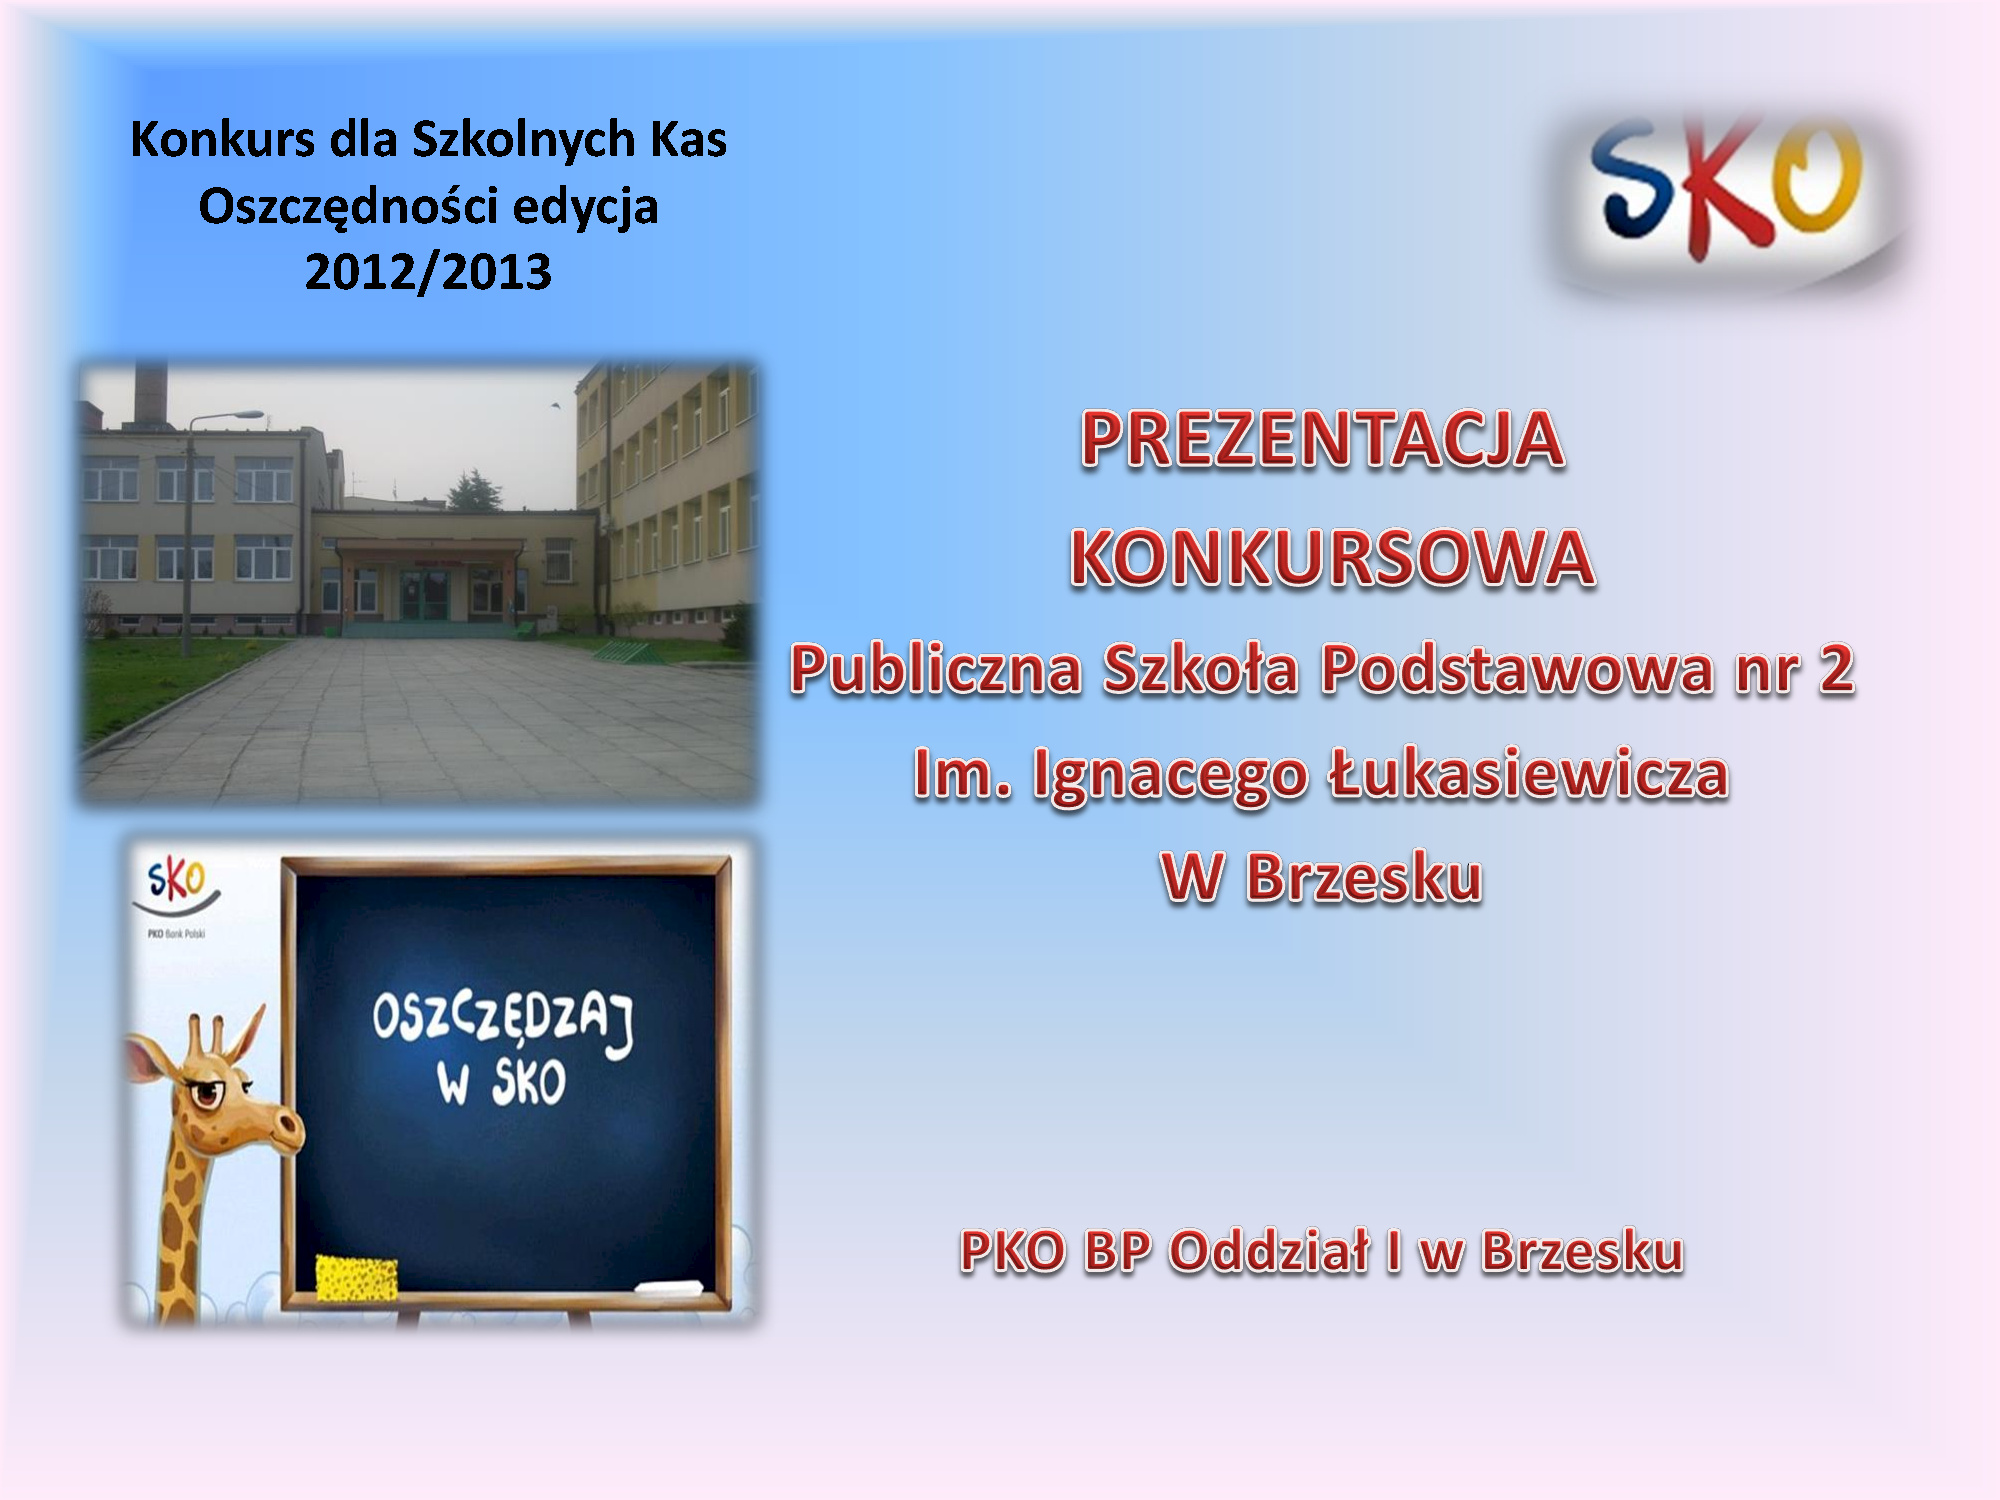 Publiczna Szkoła Podstawowa nr 2 im. Ignacego Łukasiewicza w Brzesku